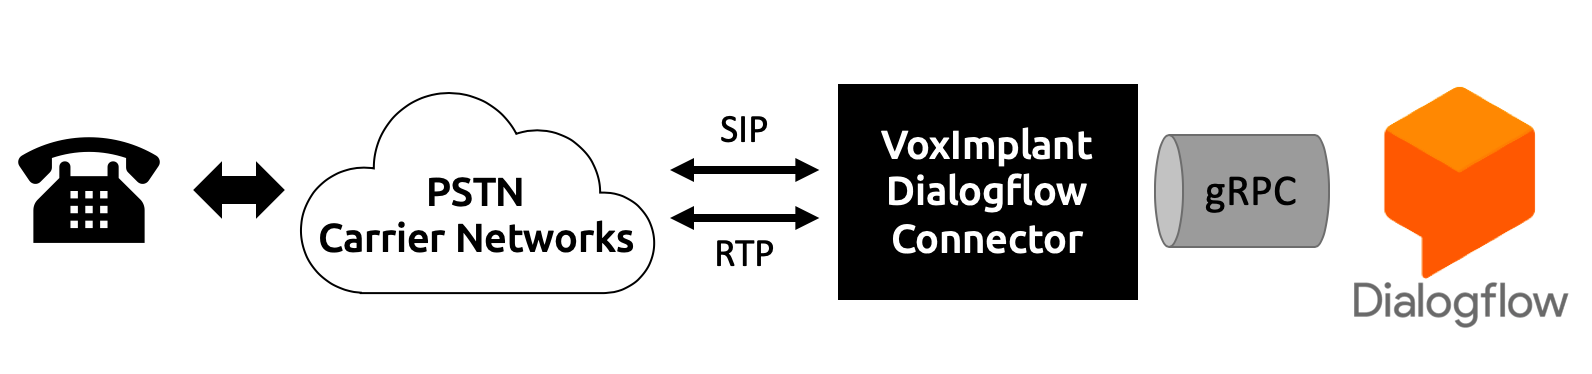 Voximplant-Dialogflow-Connector-architecture